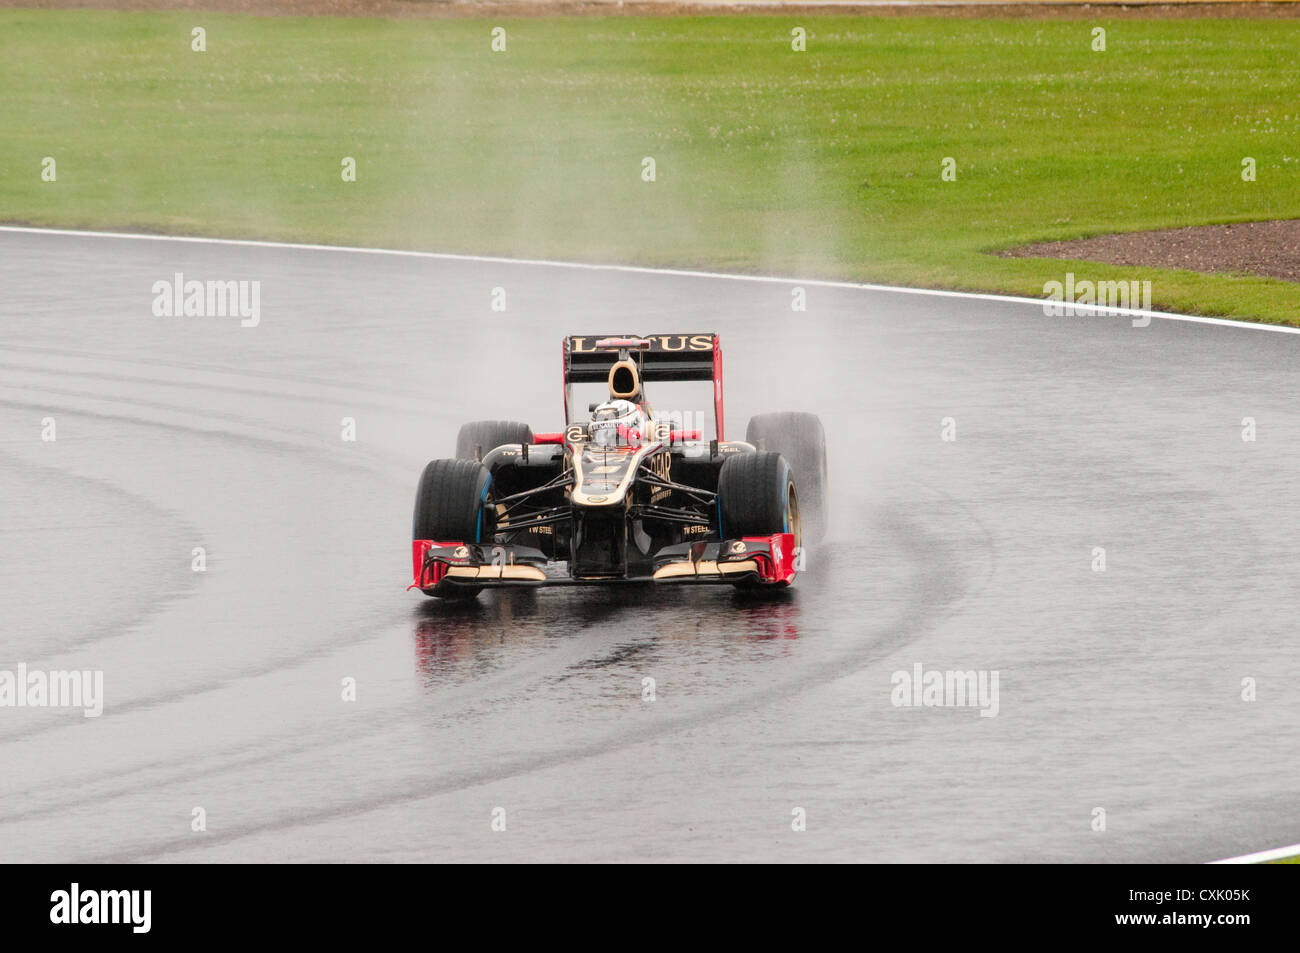 Kimi Raikkonen in his Lotus F1 Car in the Wet Stock Photo